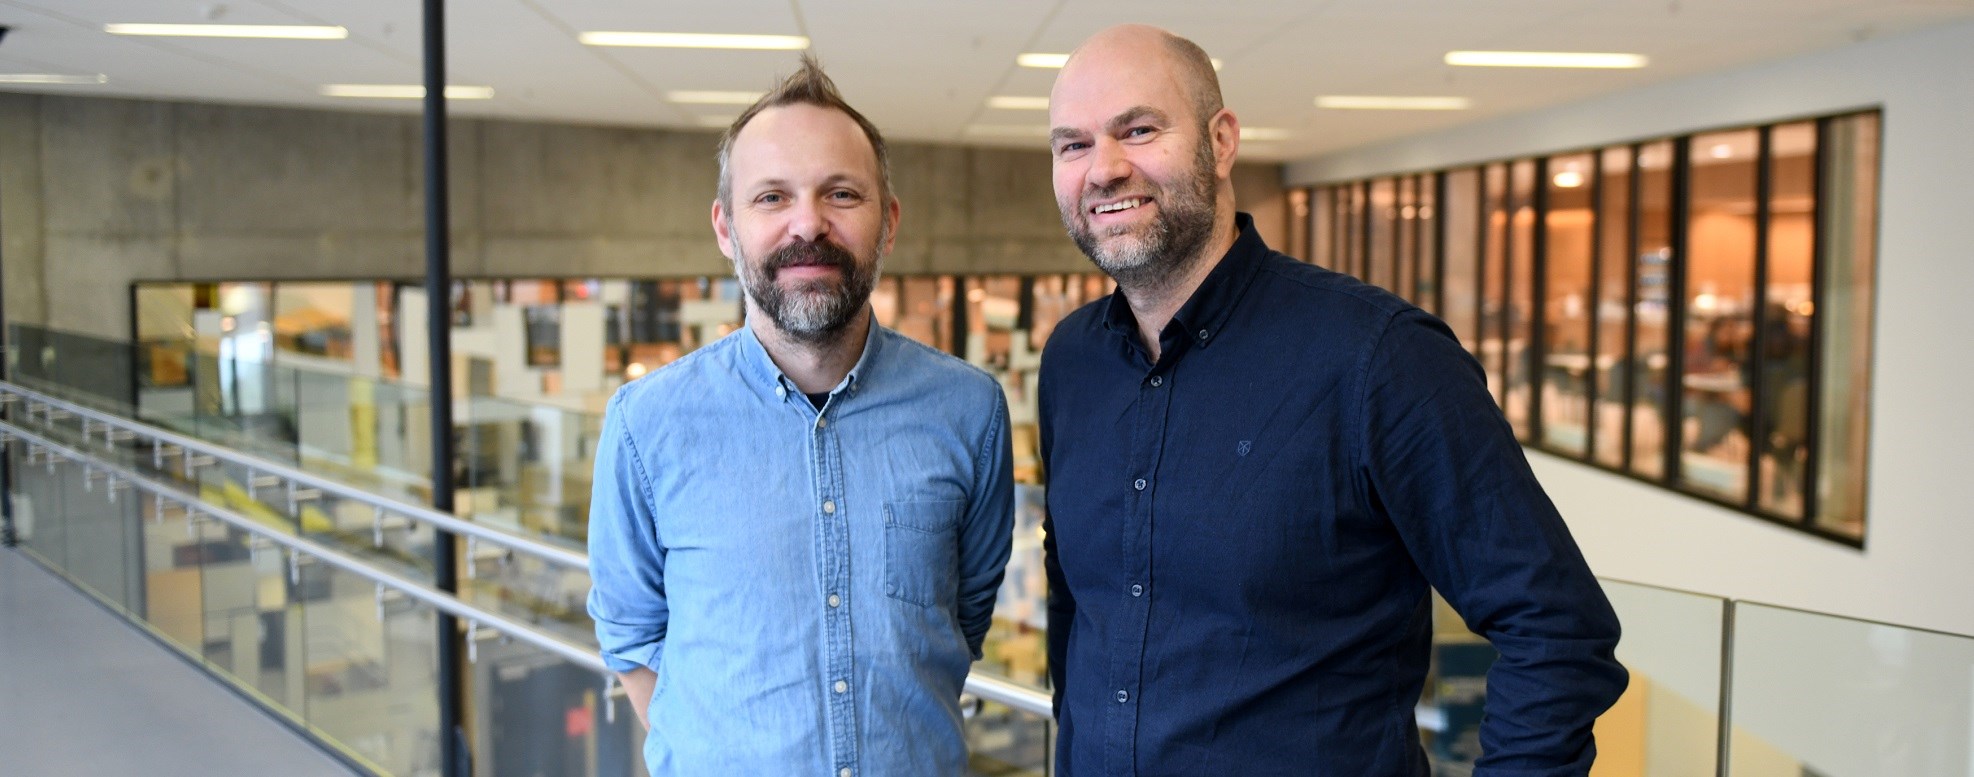 Professor Lars Jacob Tynes Pedersen and Associate Professor Sveinung Jørgensen, 